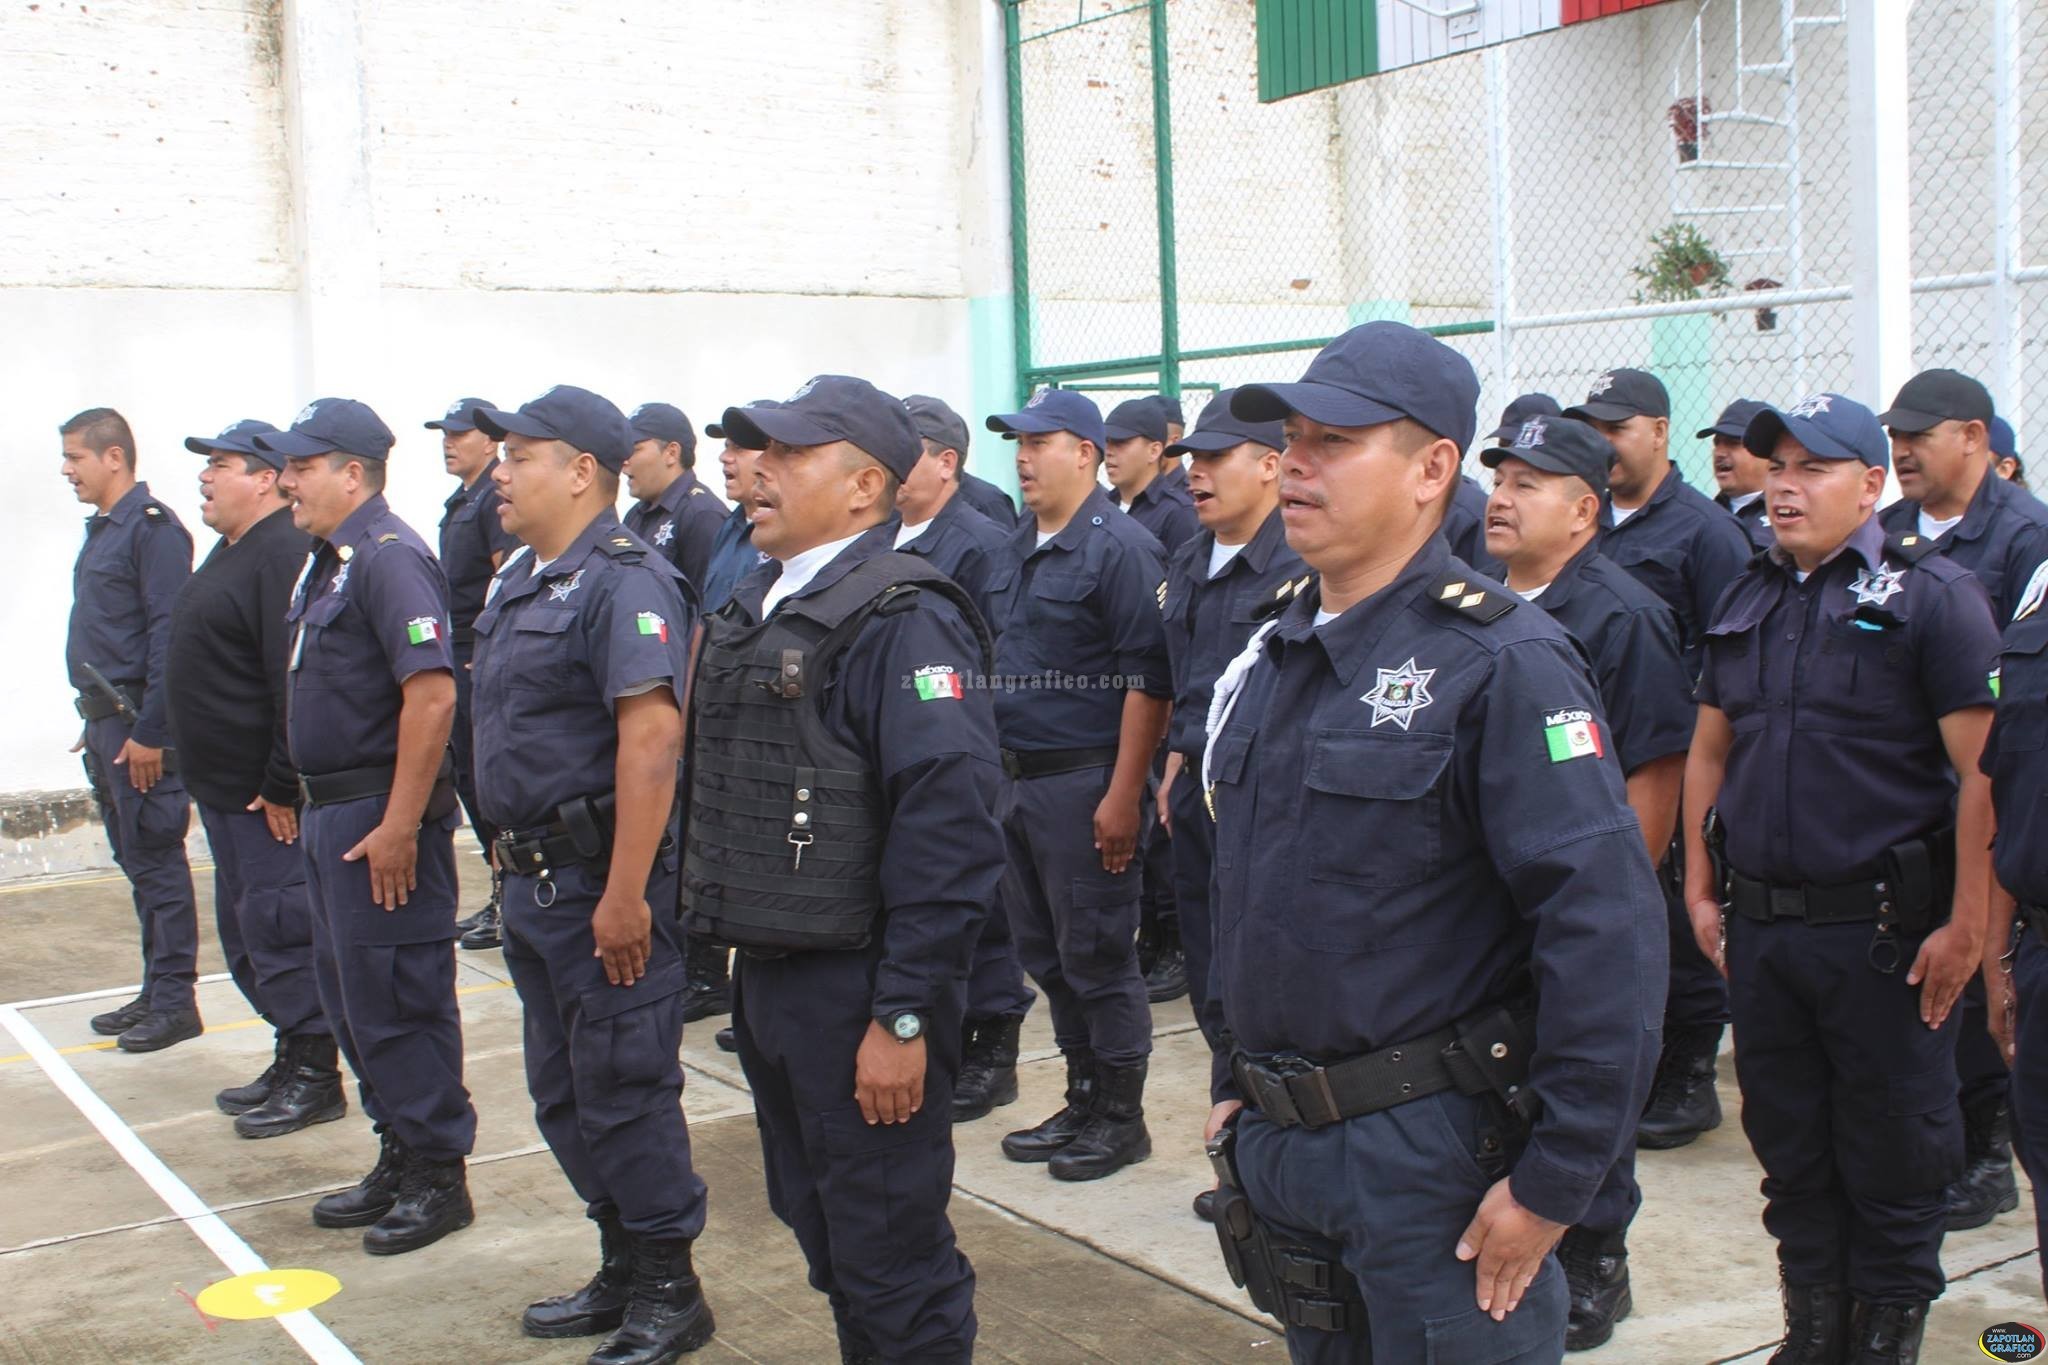 La corporación de Seguridad Publica Municipal de Tamazula continúa con su formación integral.